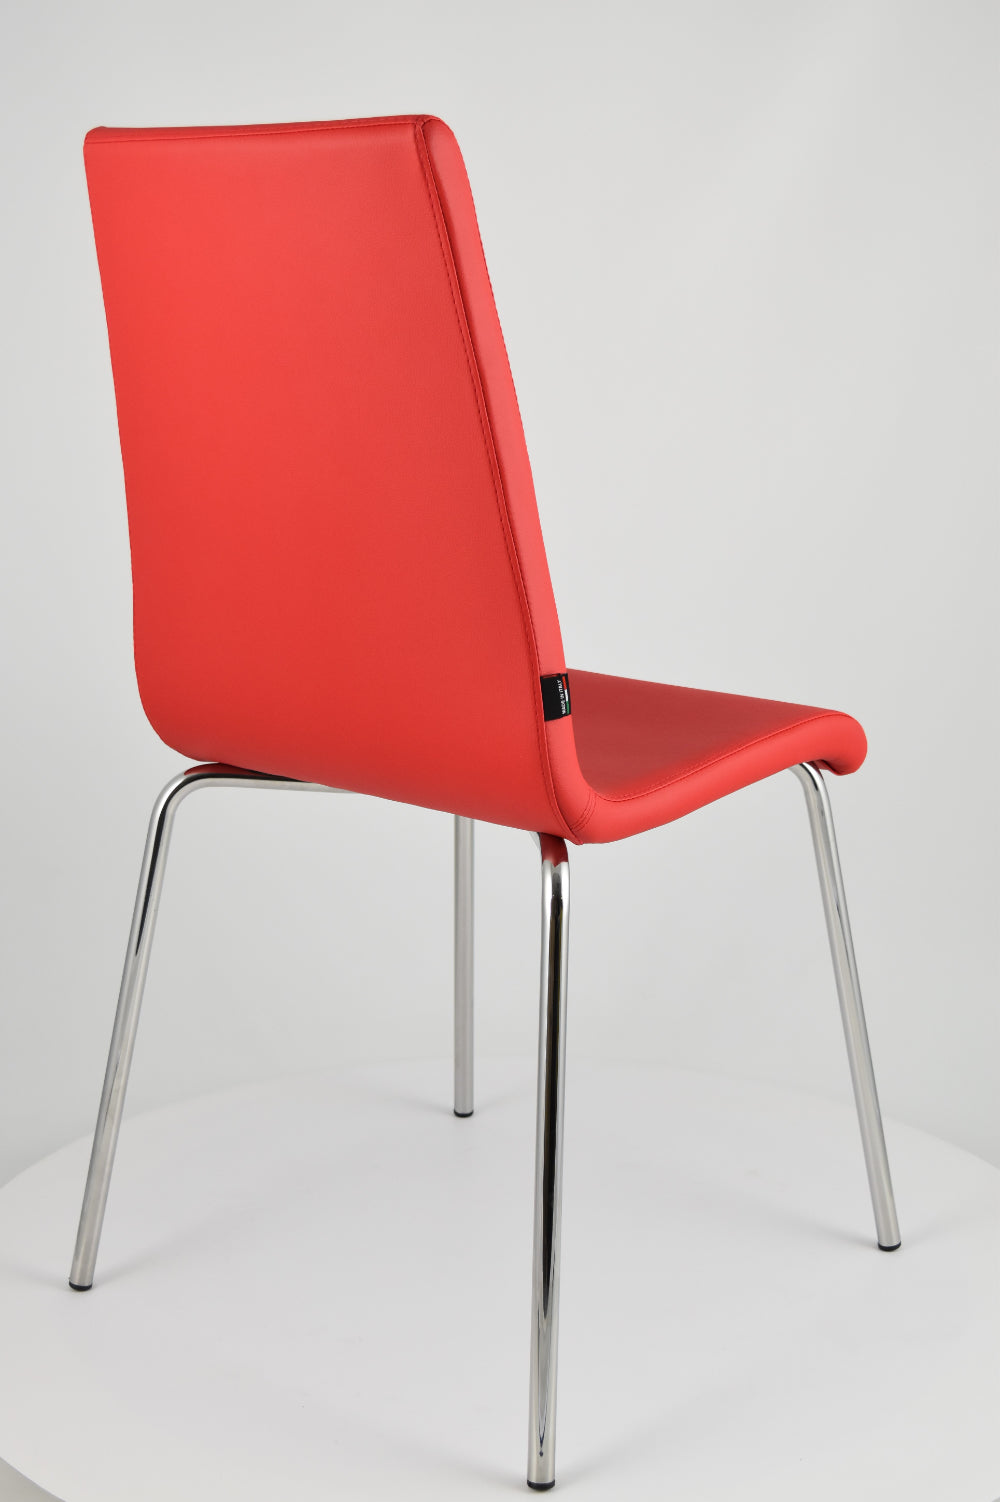 Tommychairs - Set 4 sillas Madrid con Patas de Acero Cromado y Asiento en Madera Multicapa, tapizado en Polipiel Color Rojo